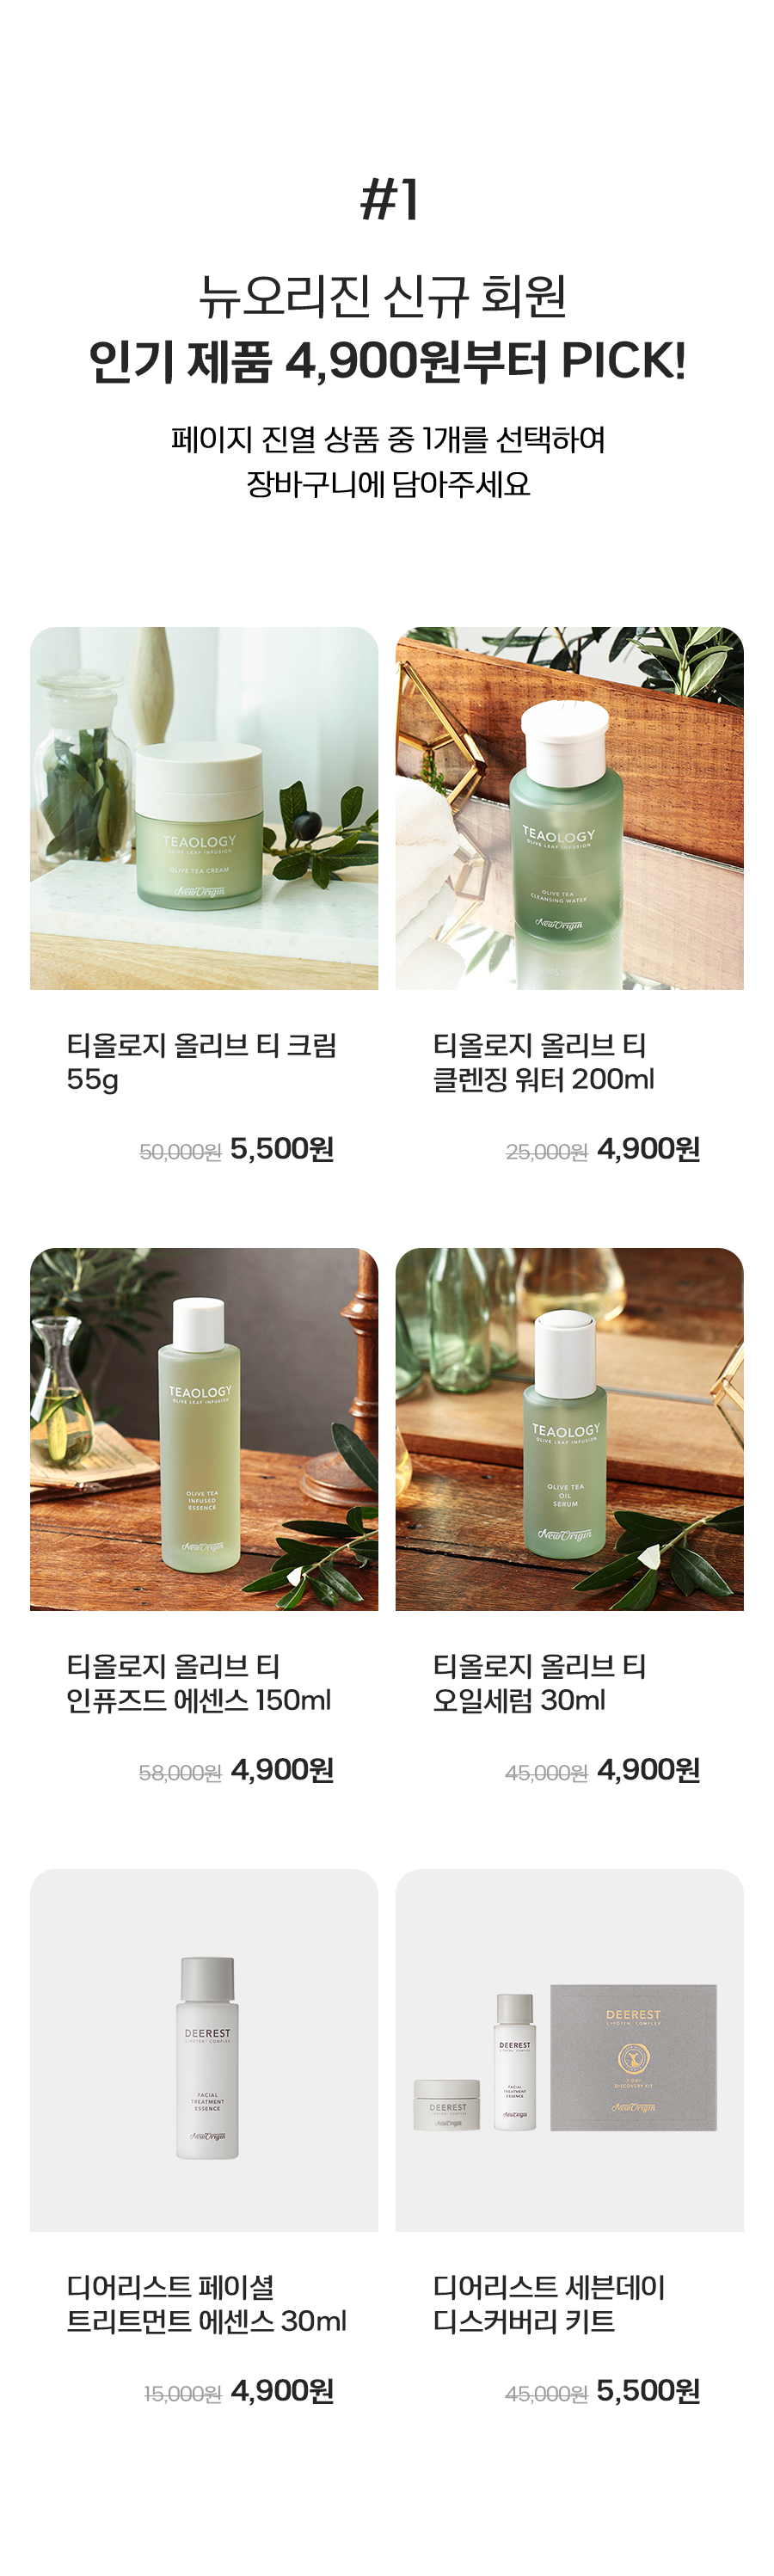 뉴오리진 신규 회원 인기 제품 4,900원부터 PICK!